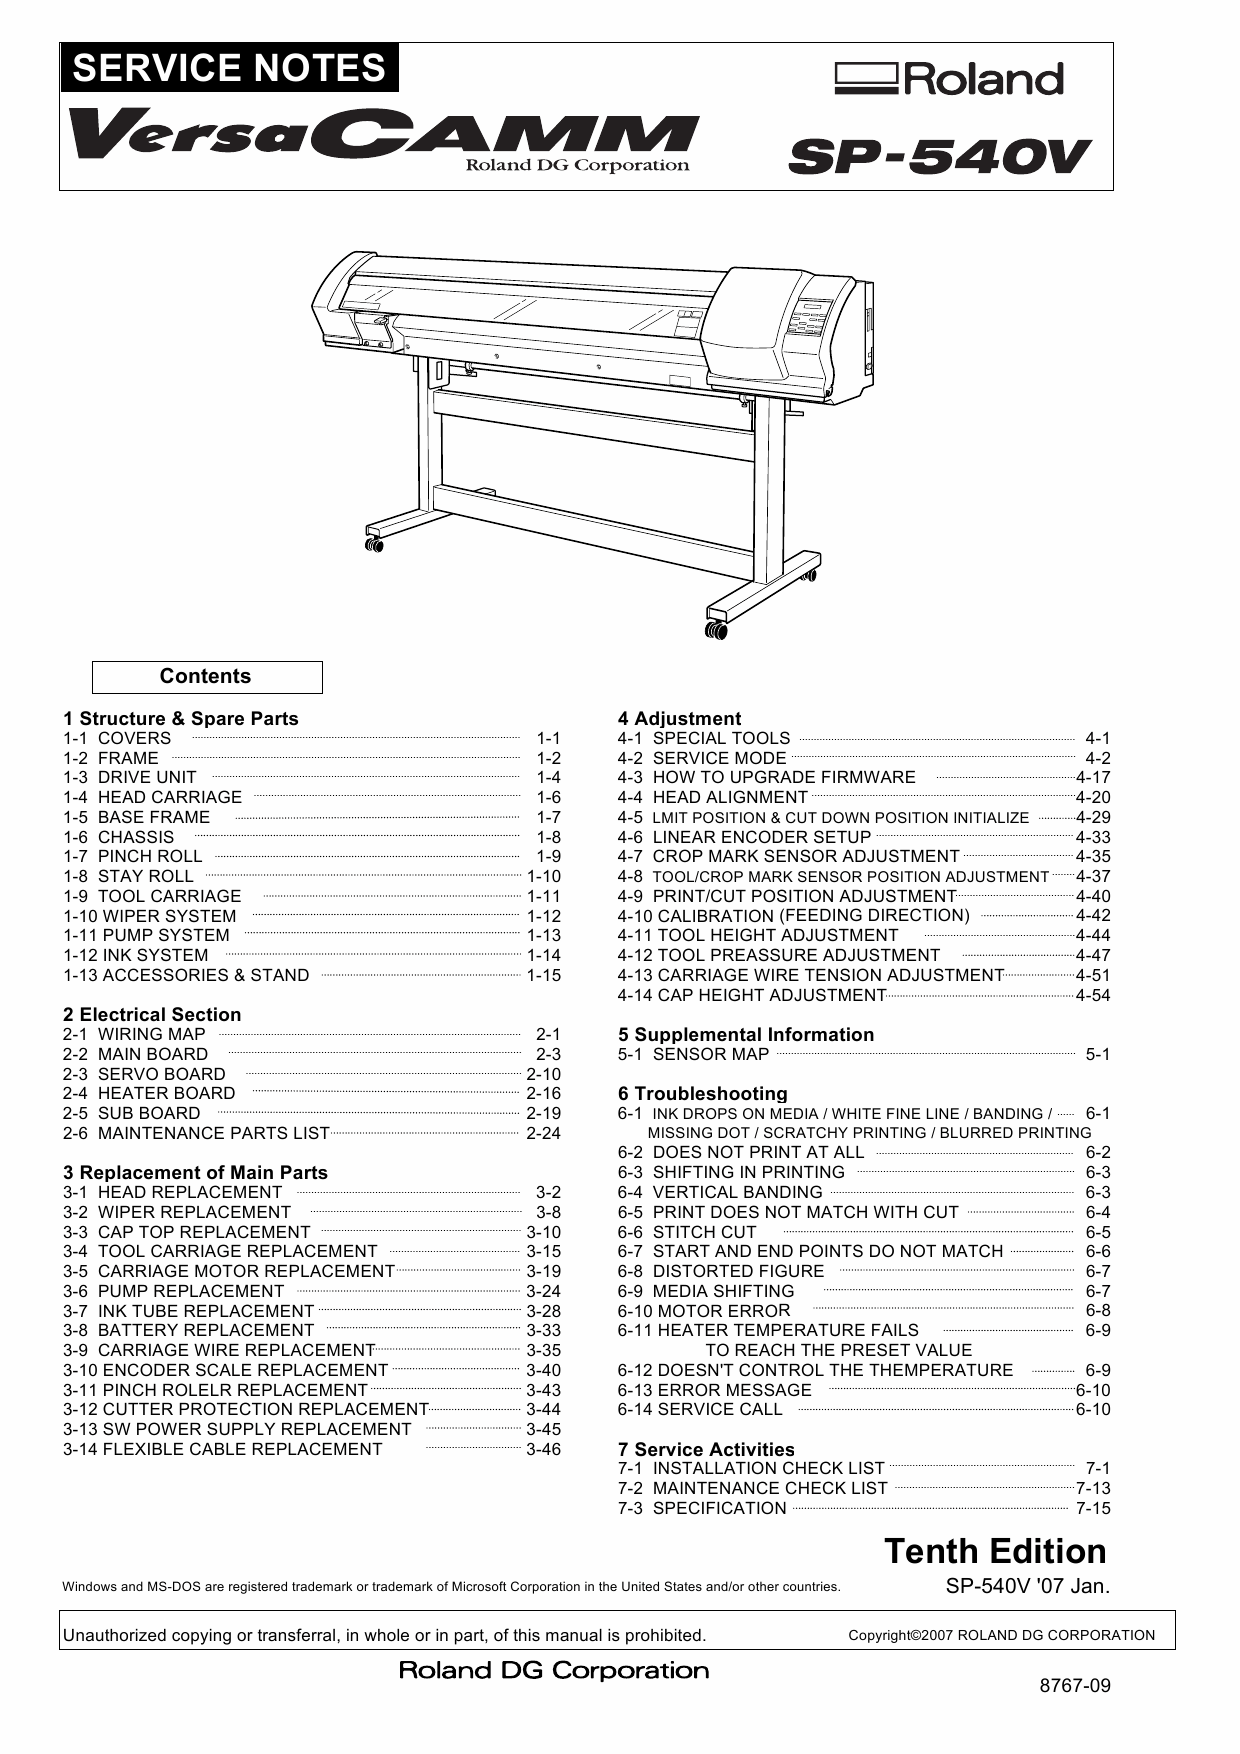 Roland VersaCAMM SP 540V Service Notes Manual-1